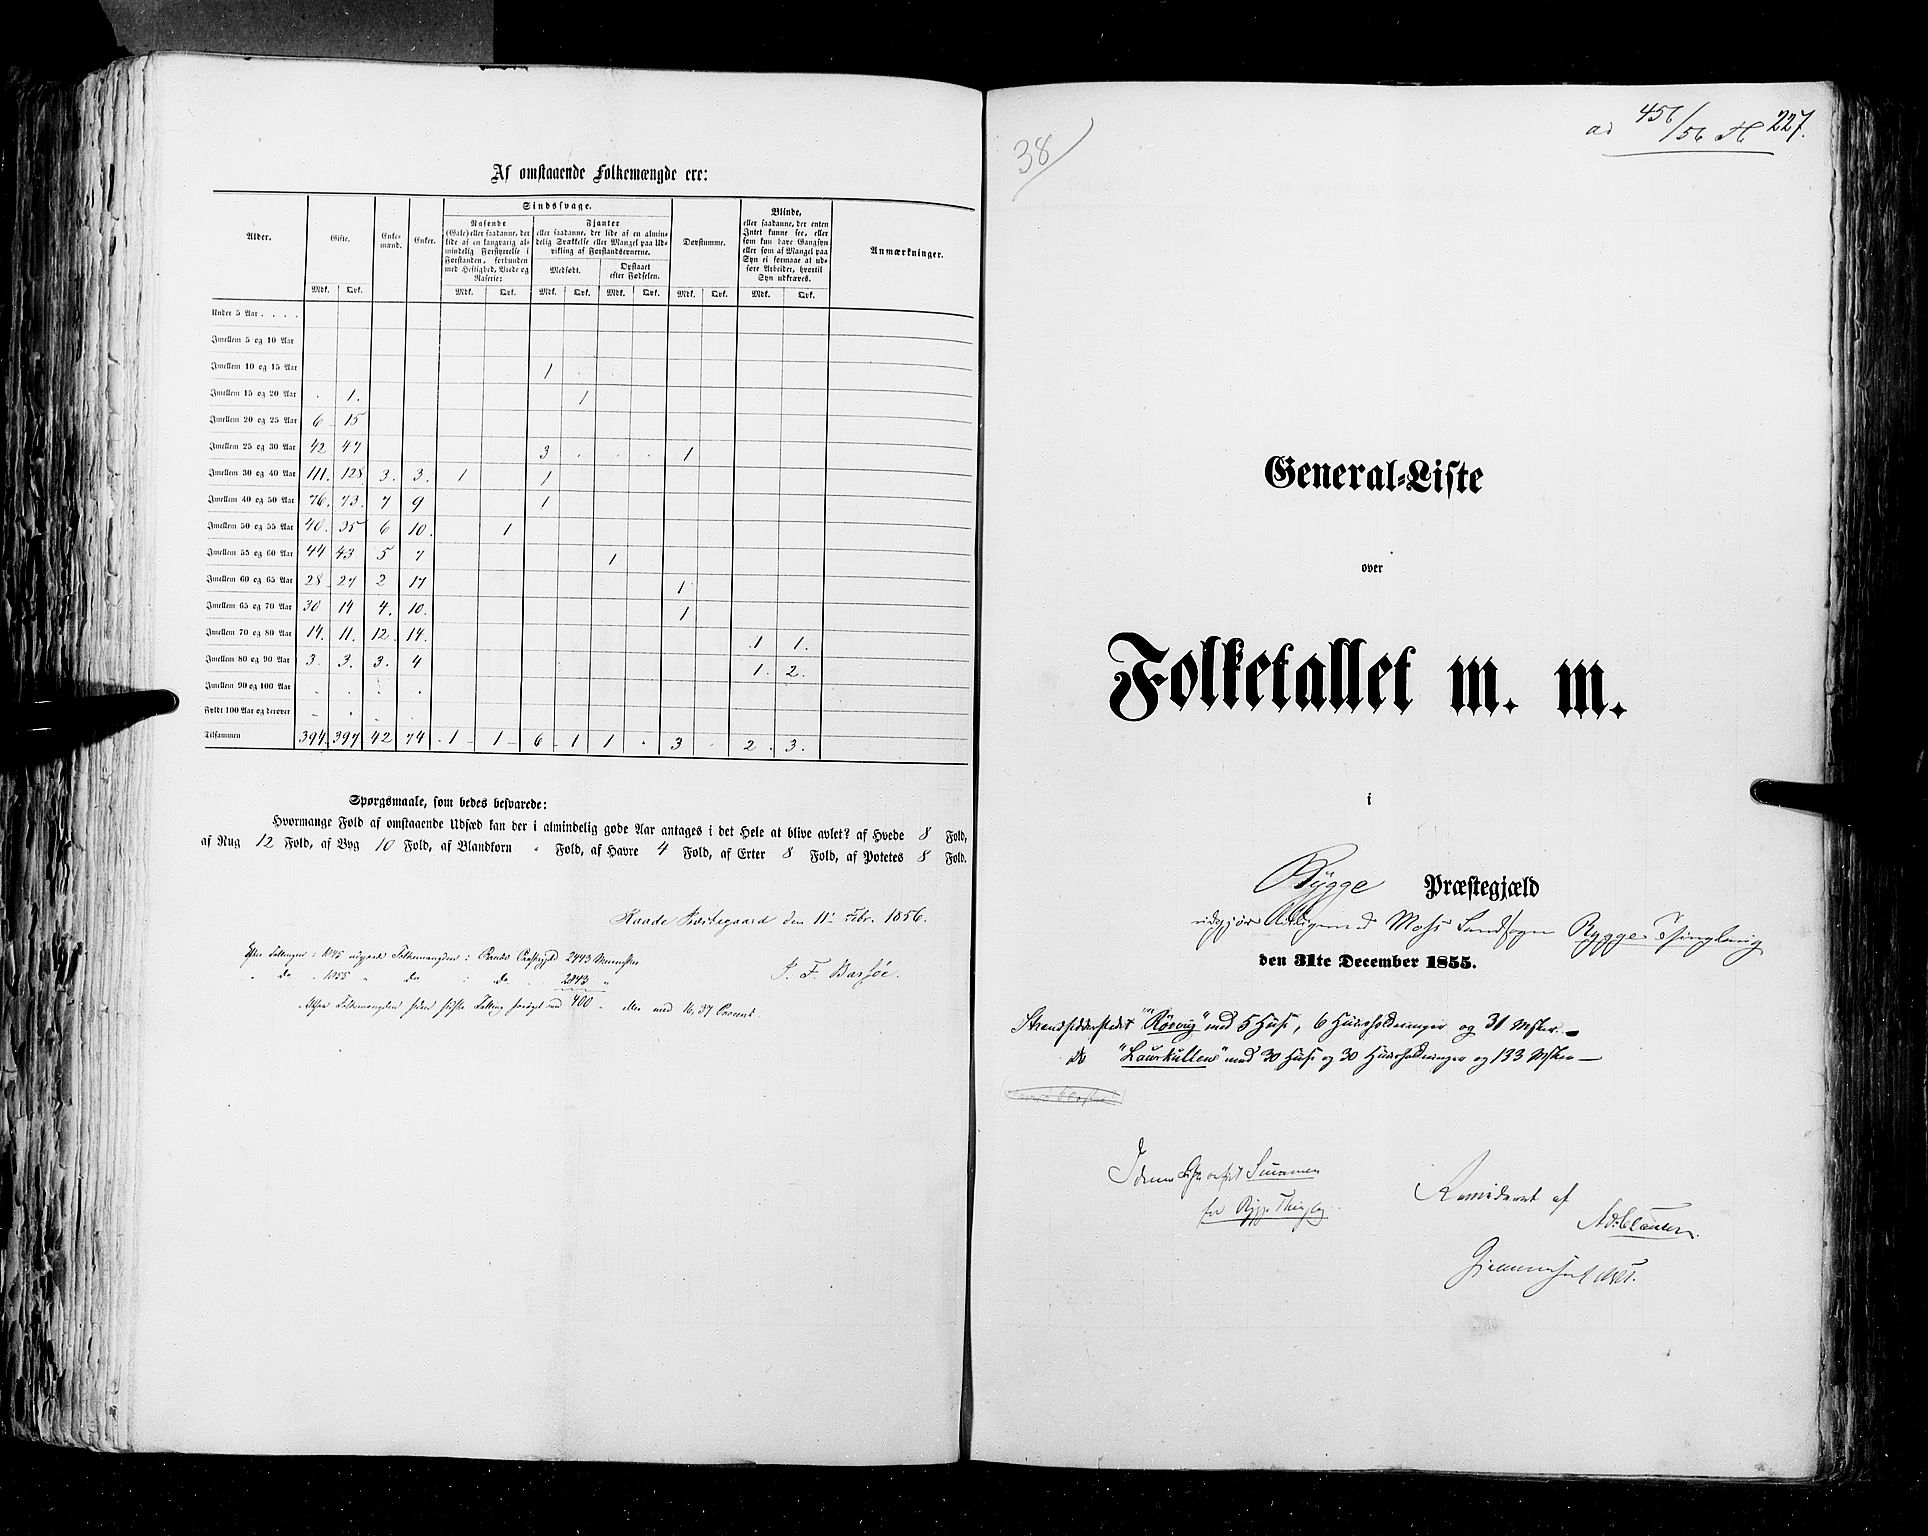 RA, Folketellingen 1855, bind 1: Akershus amt, Smålenenes amt og Hedemarken amt, 1855, s. 227